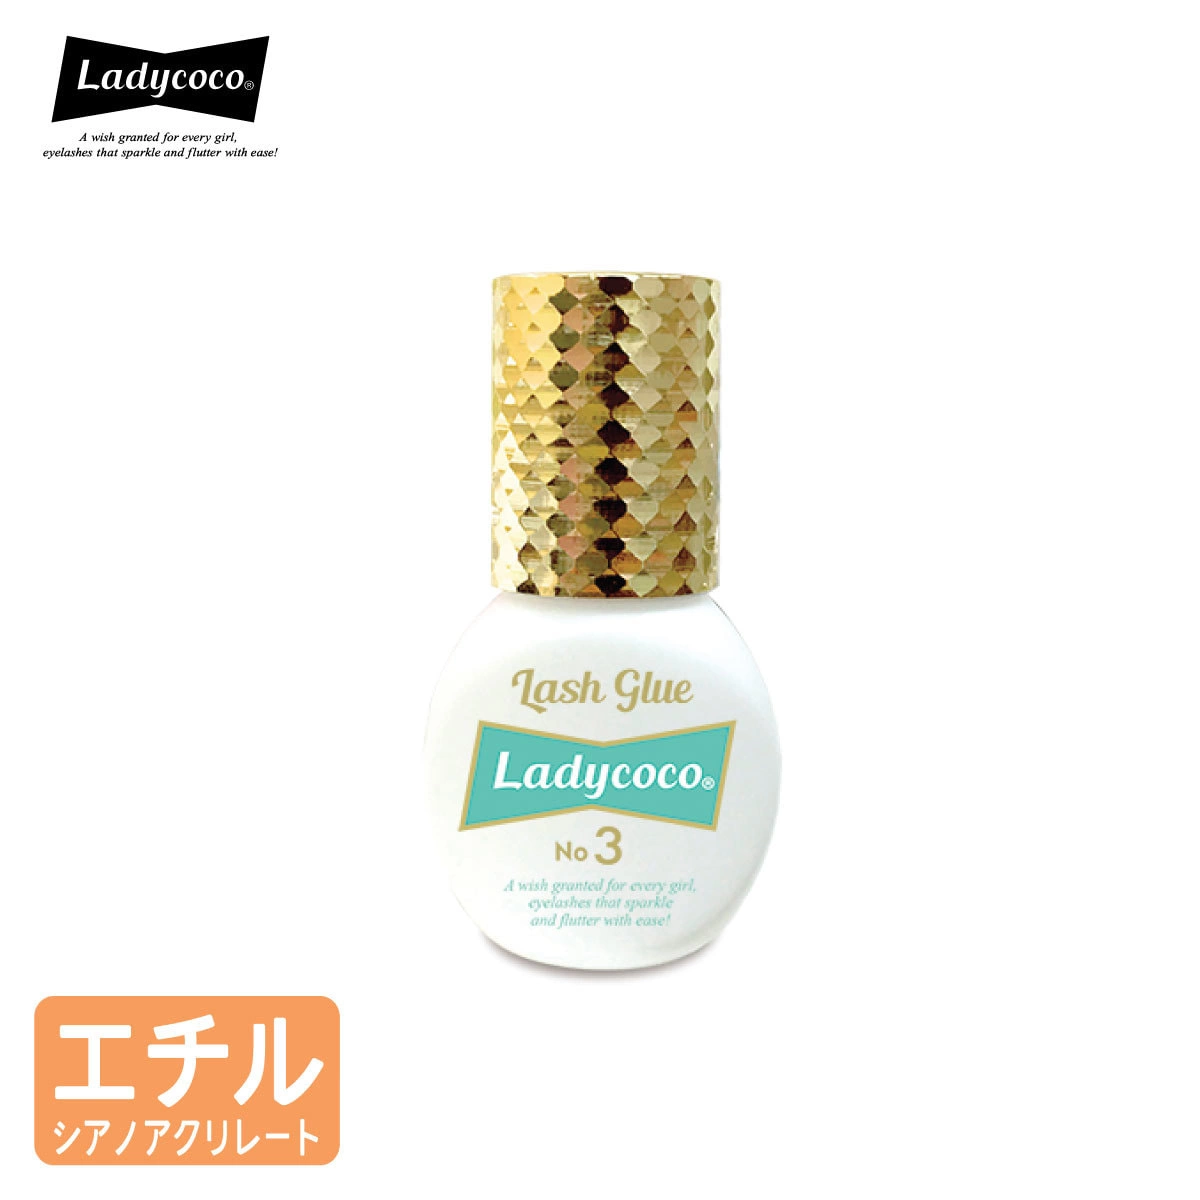 【LADYCOCO】Lash Glue No.3 5ml